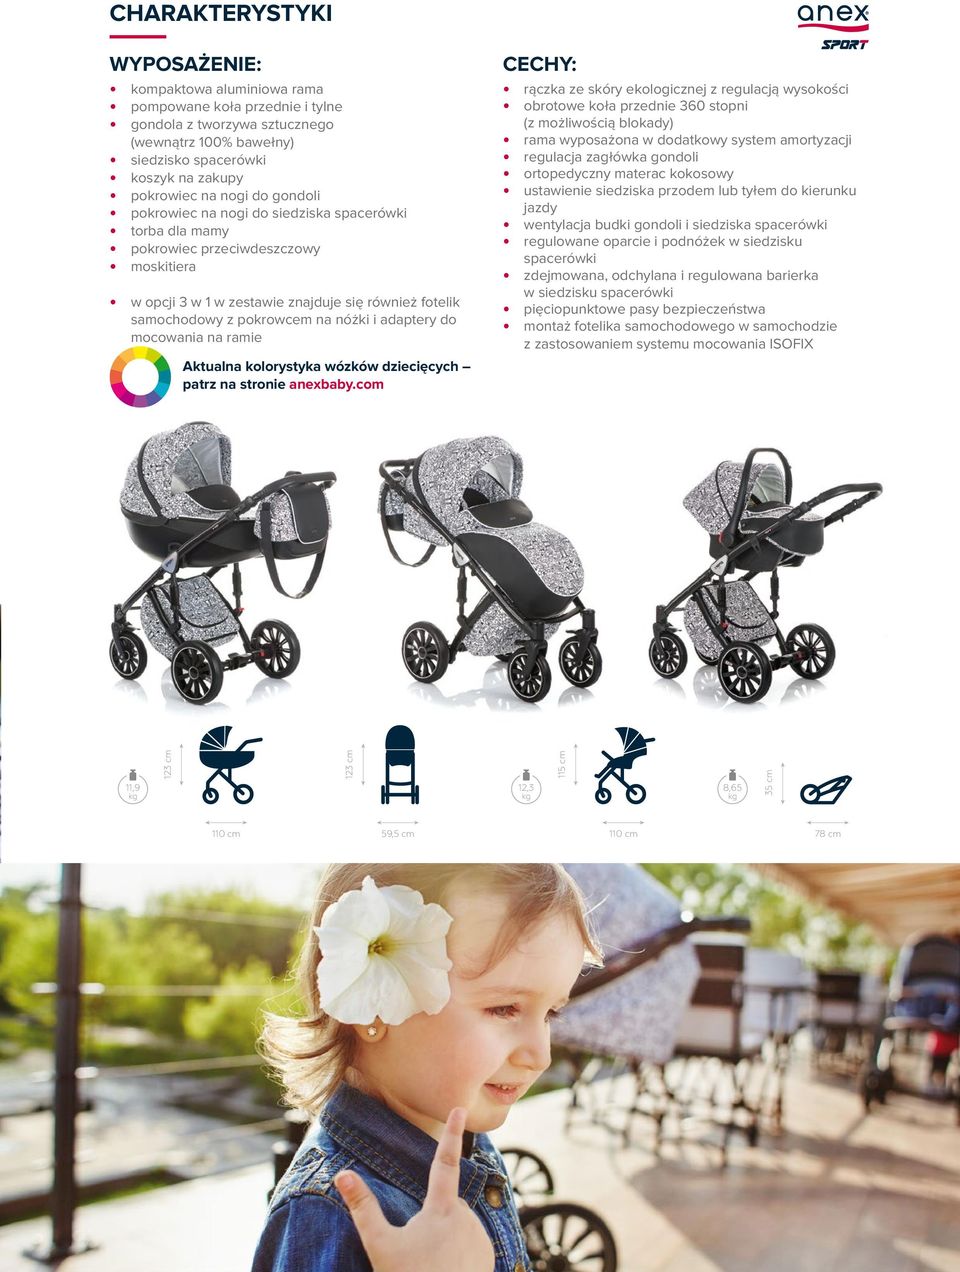 adaptery do mocowania na ramie Aktualna kolorystyka wózków dziecięcych patrz na stronie anexbaby.